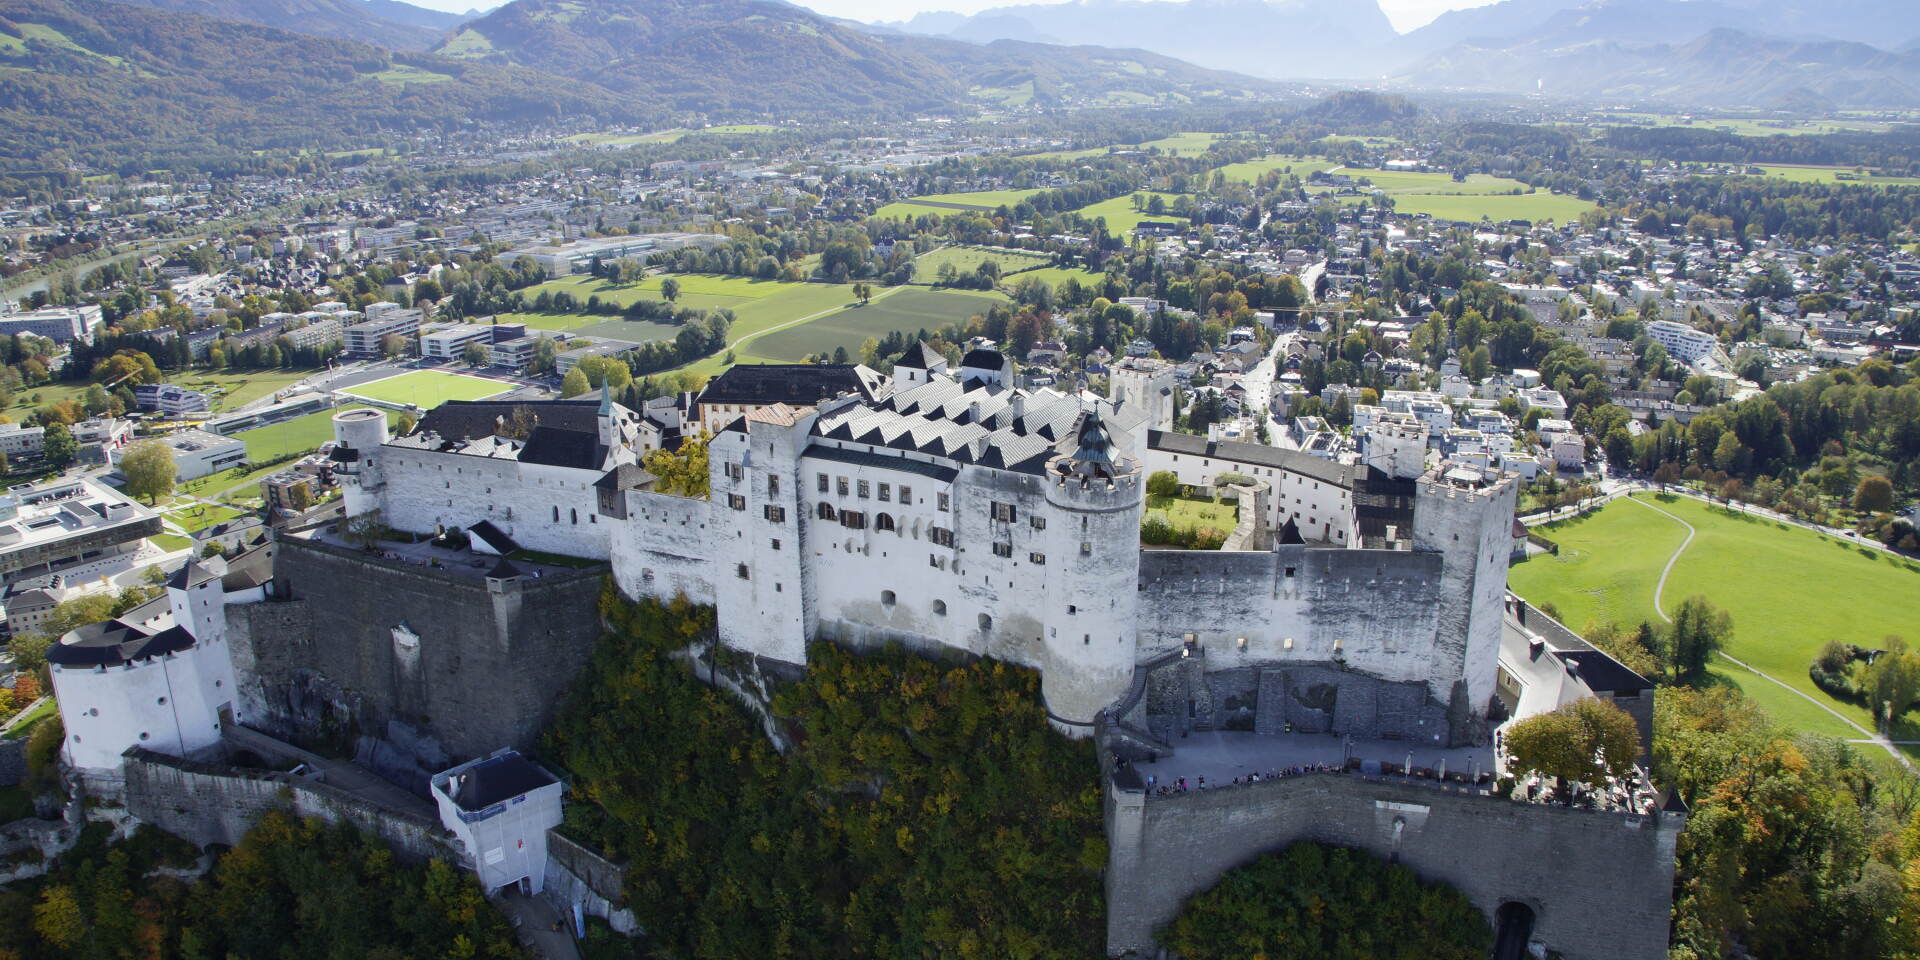 Festung Hohensalzburg - castle from above © Salzburger Burgen und Schlösser